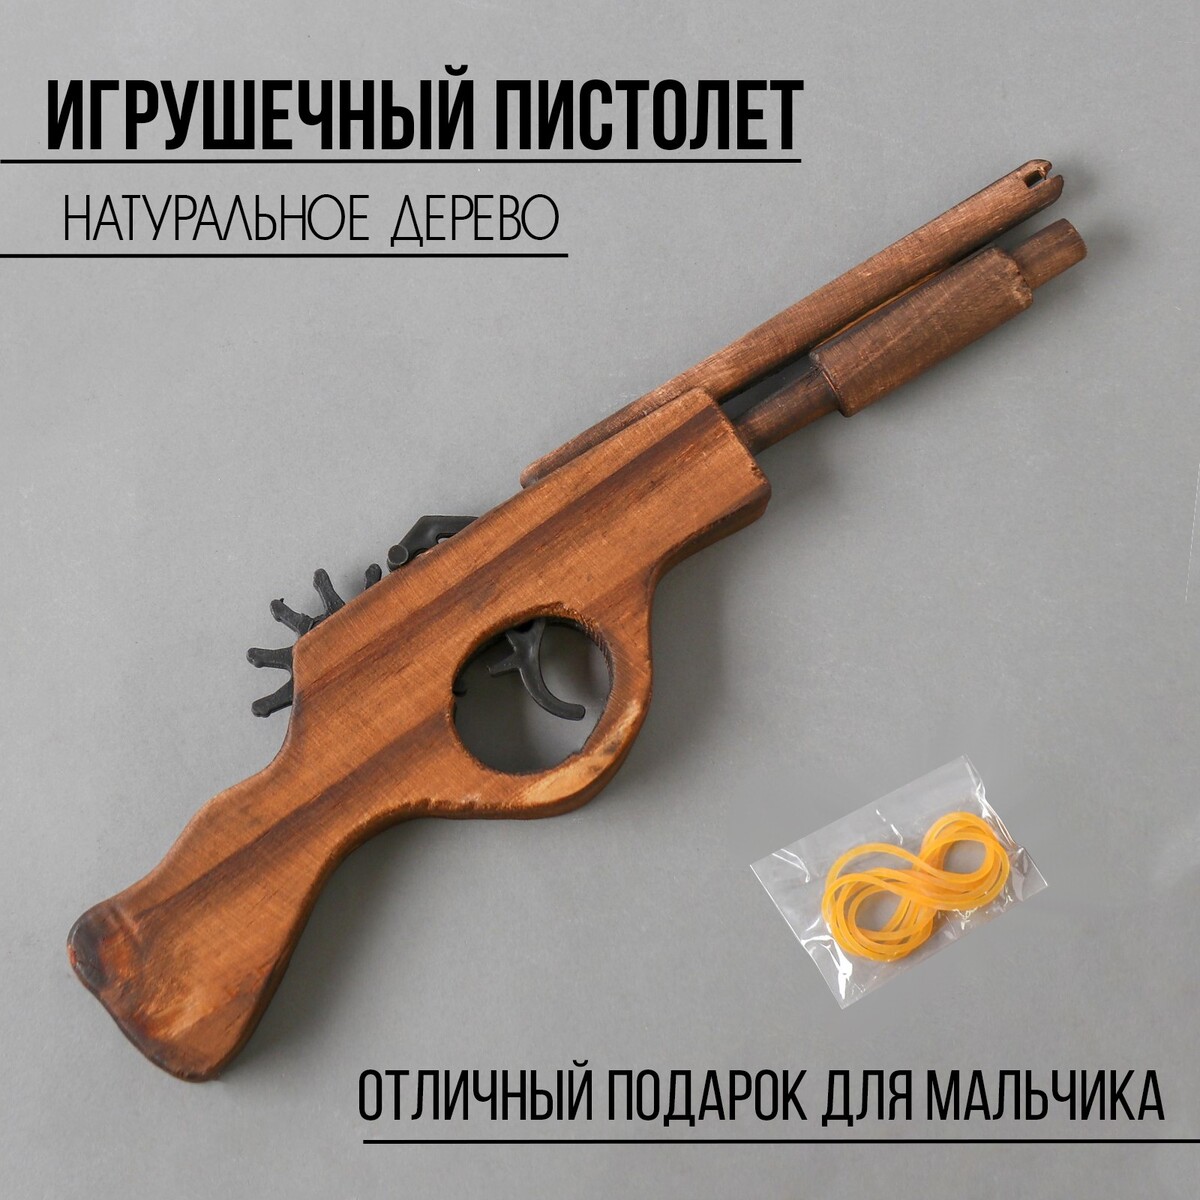 Игрушка деревянная стреляет резинками игрушка деревянная стреляет резинками автомат 57x11 5x2 см 4607921